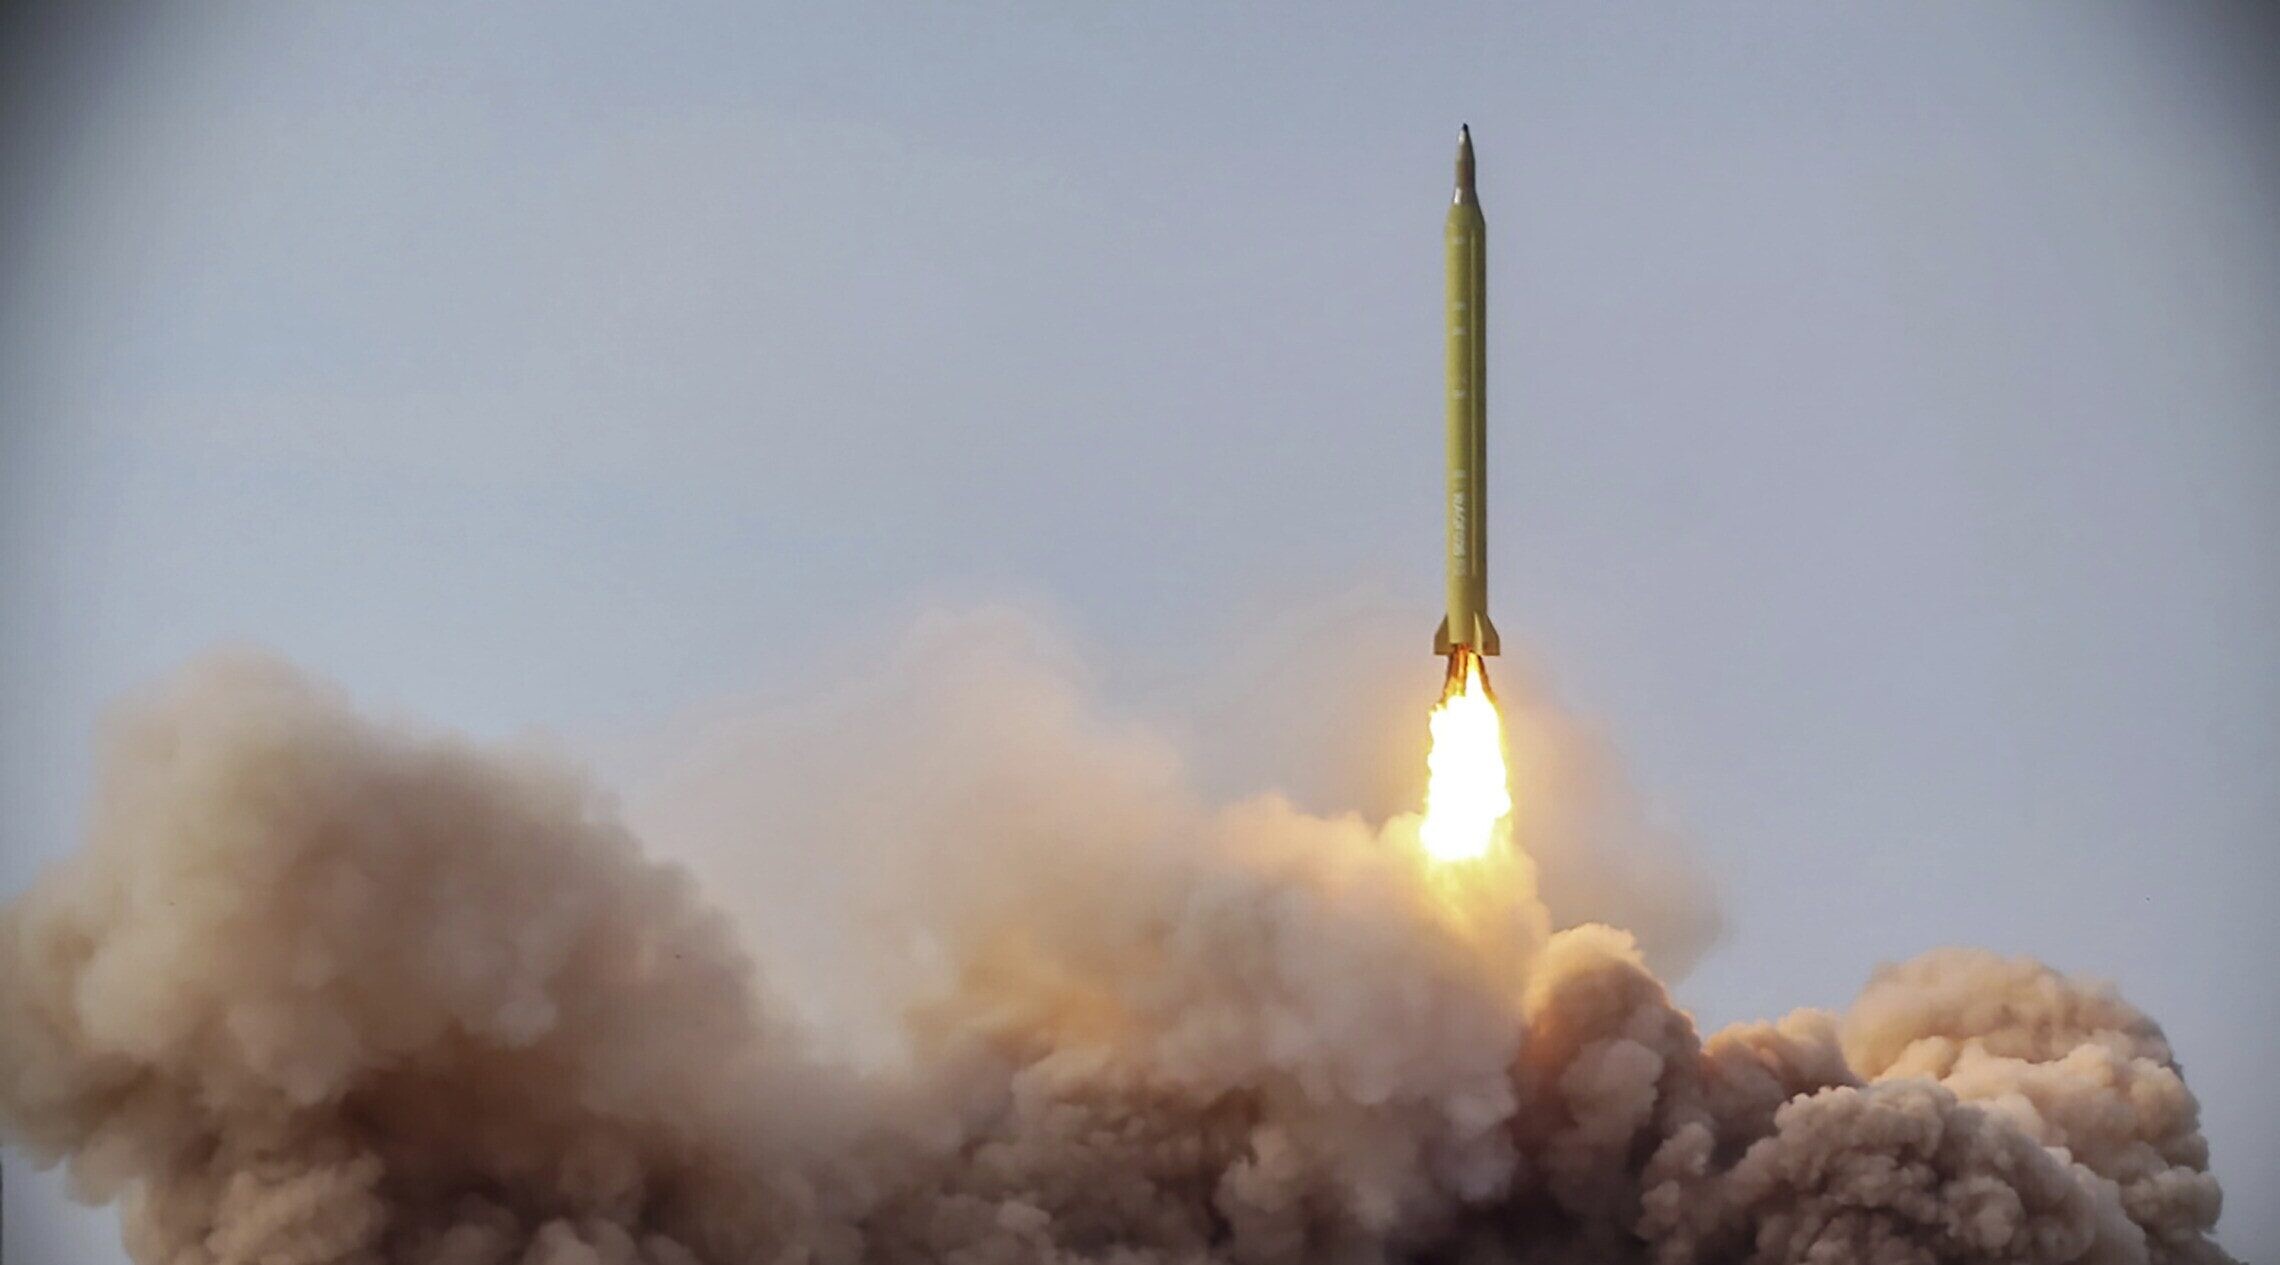 שיגור טיל איראני במסגרת תרגיל צבאי, 16 בינואר 2021 (צילום: Iranian Revolutionary Guard/Sepahnews via AP)